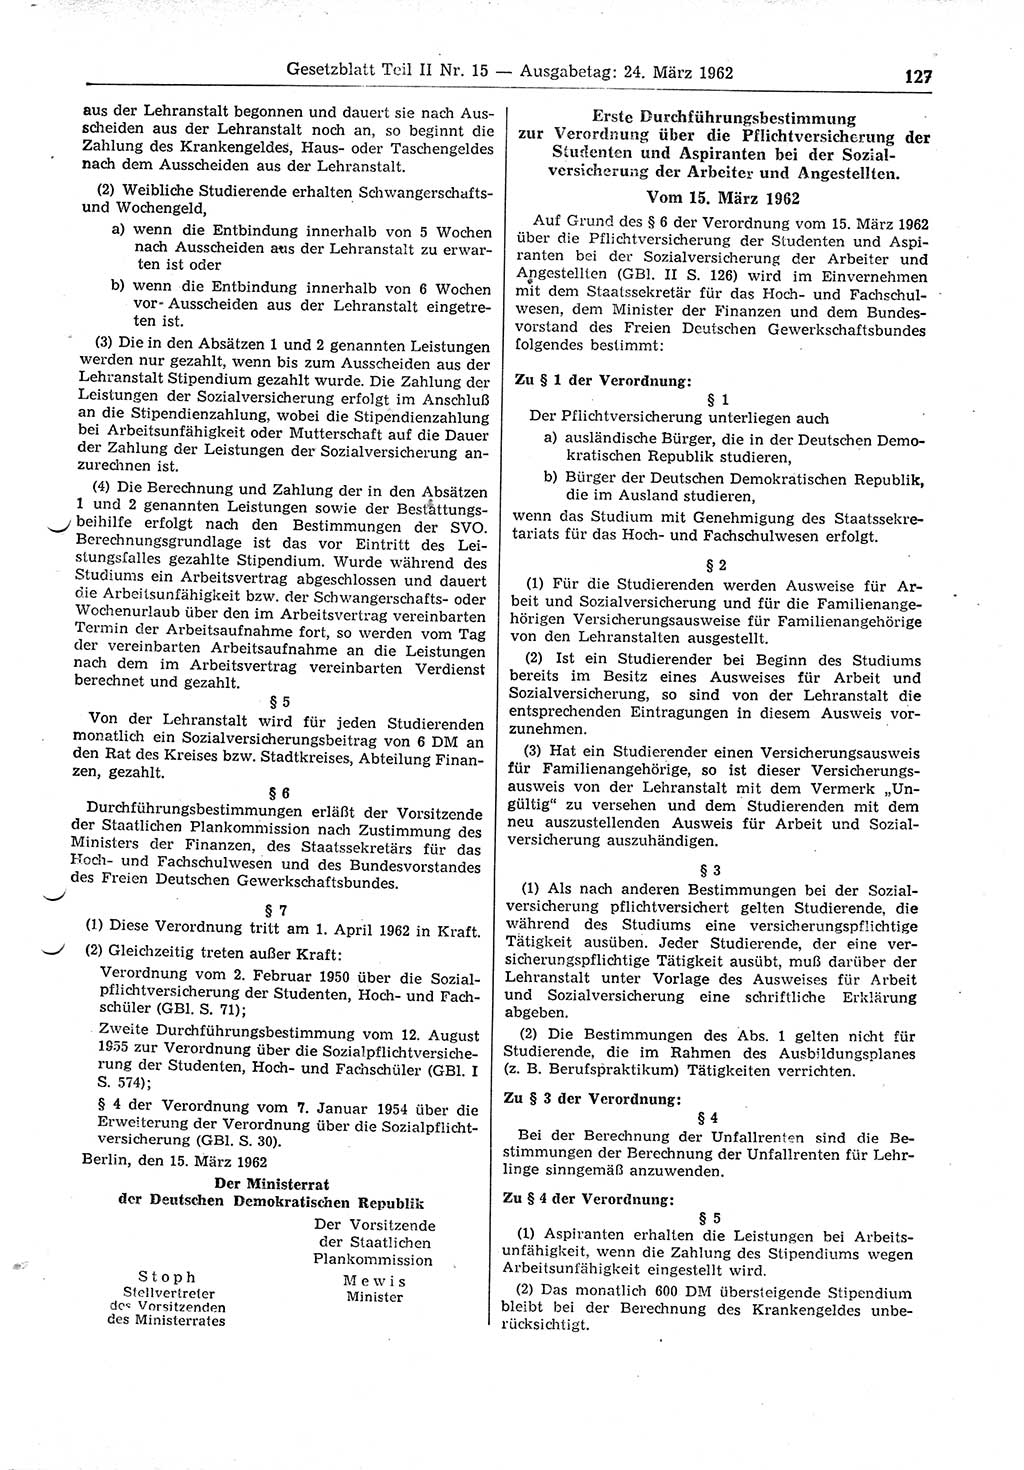 Gesetzblatt (GBl.) der Deutschen Demokratischen Republik (DDR) Teil ⅠⅠ 1962, Seite 127 (GBl. DDR ⅠⅠ 1962, S. 127)